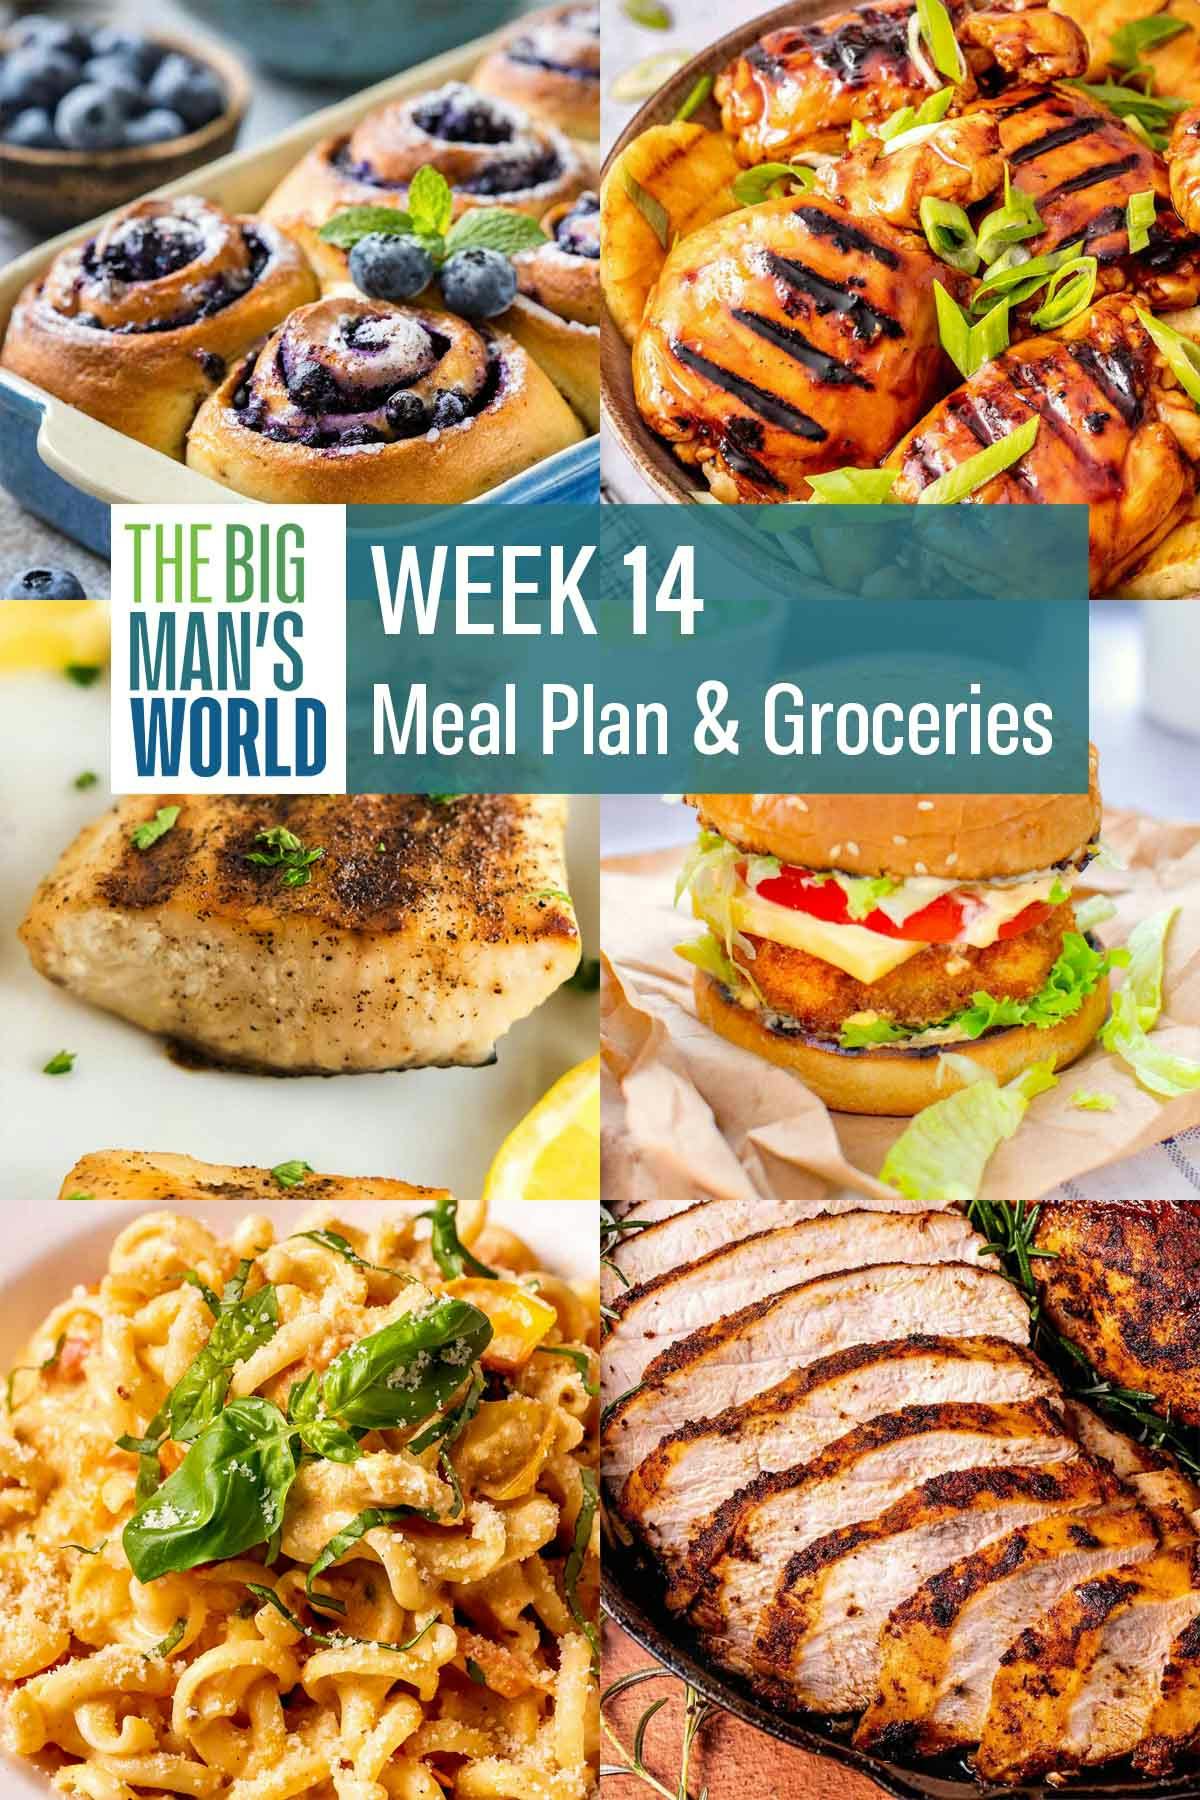 Week 14 Meal Plan & Groceries